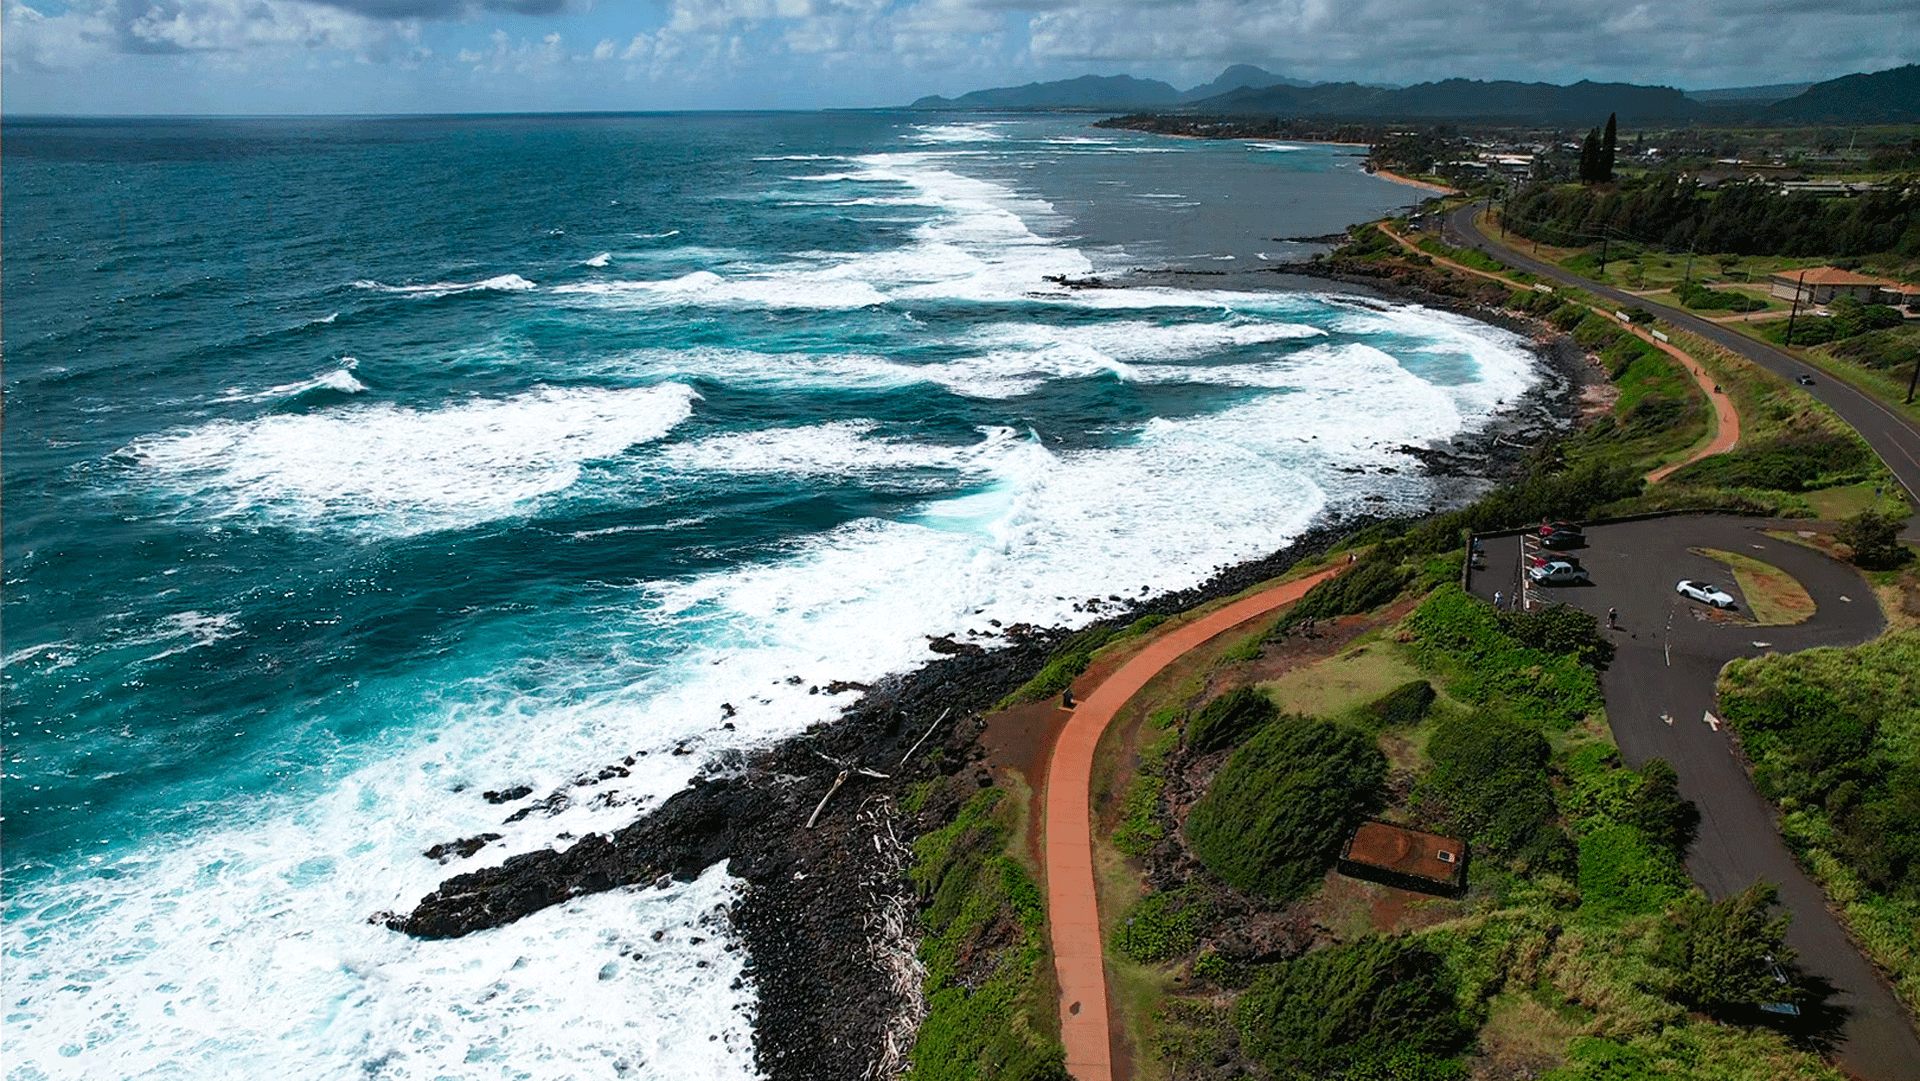 Aerial views of Kauaʻi's shores